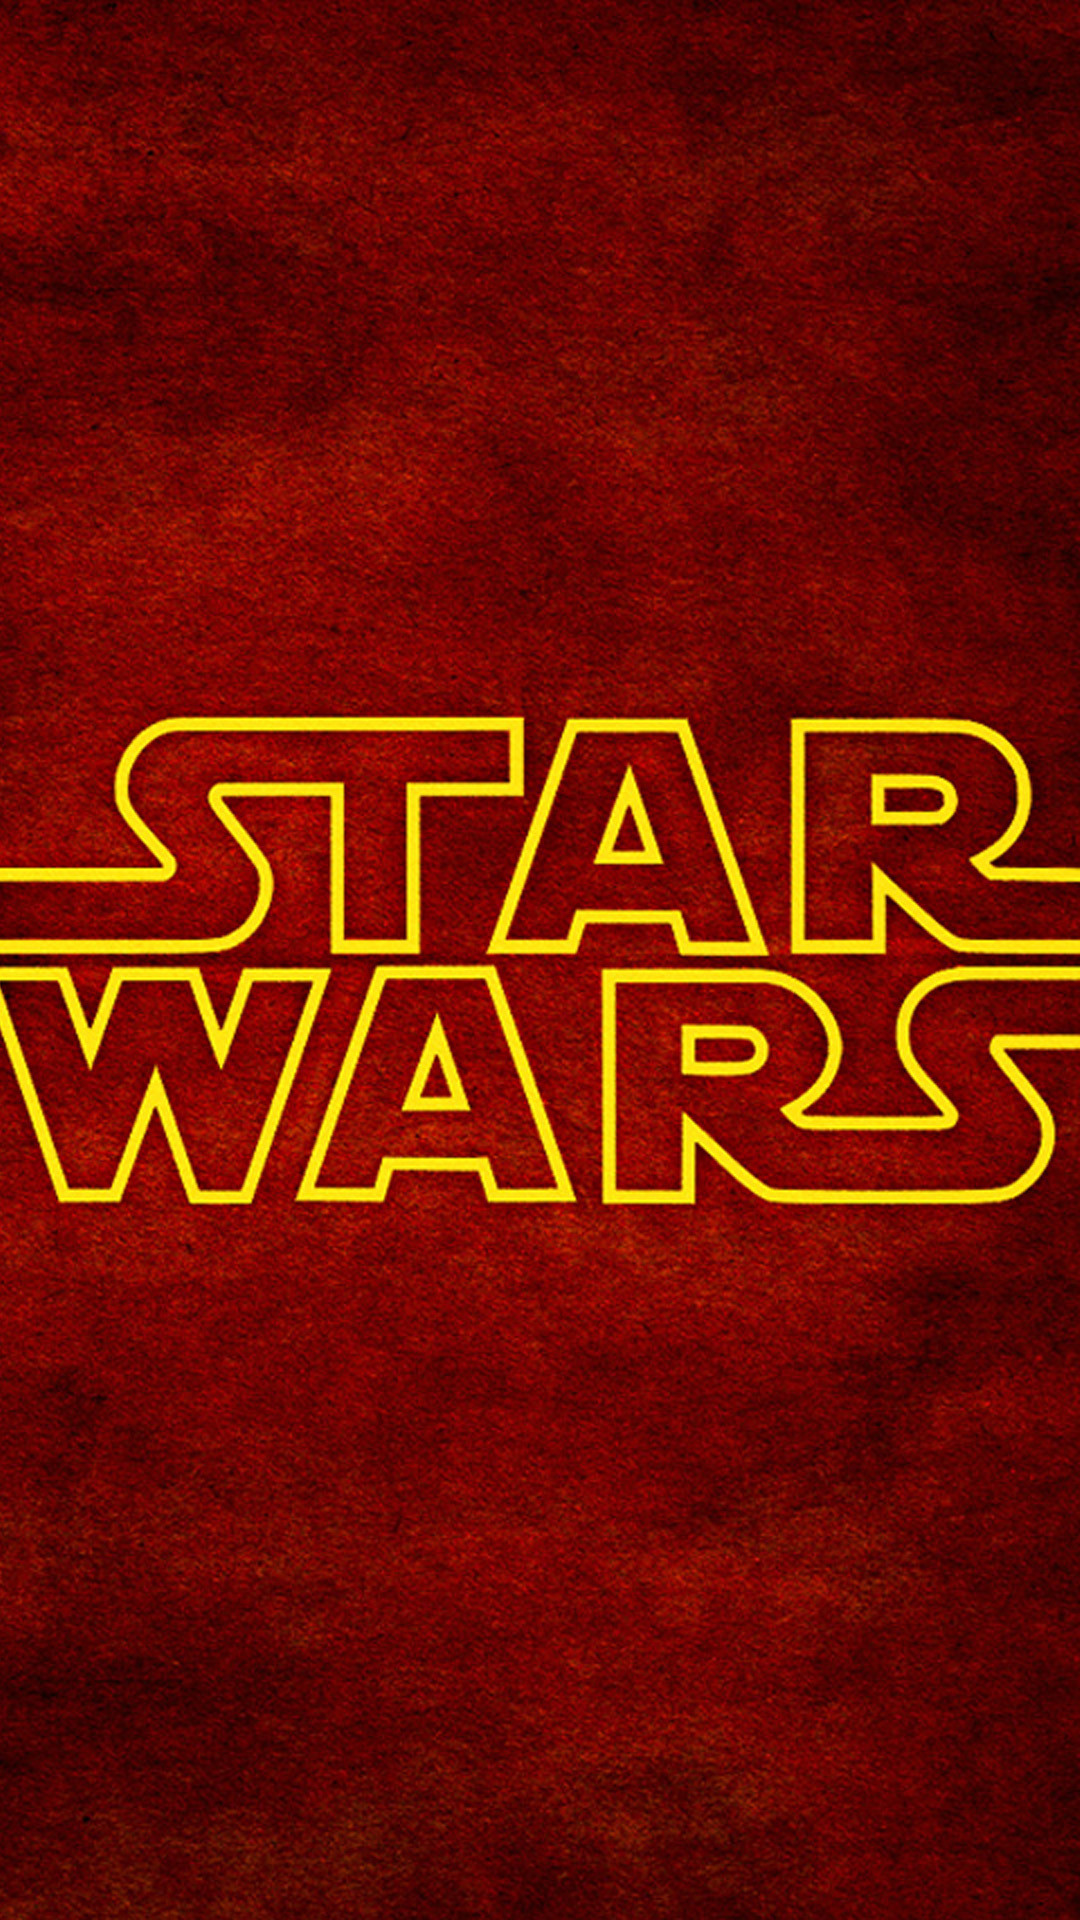 ディズニー画像ランド 最高壁紙 Star Wars ロゴ